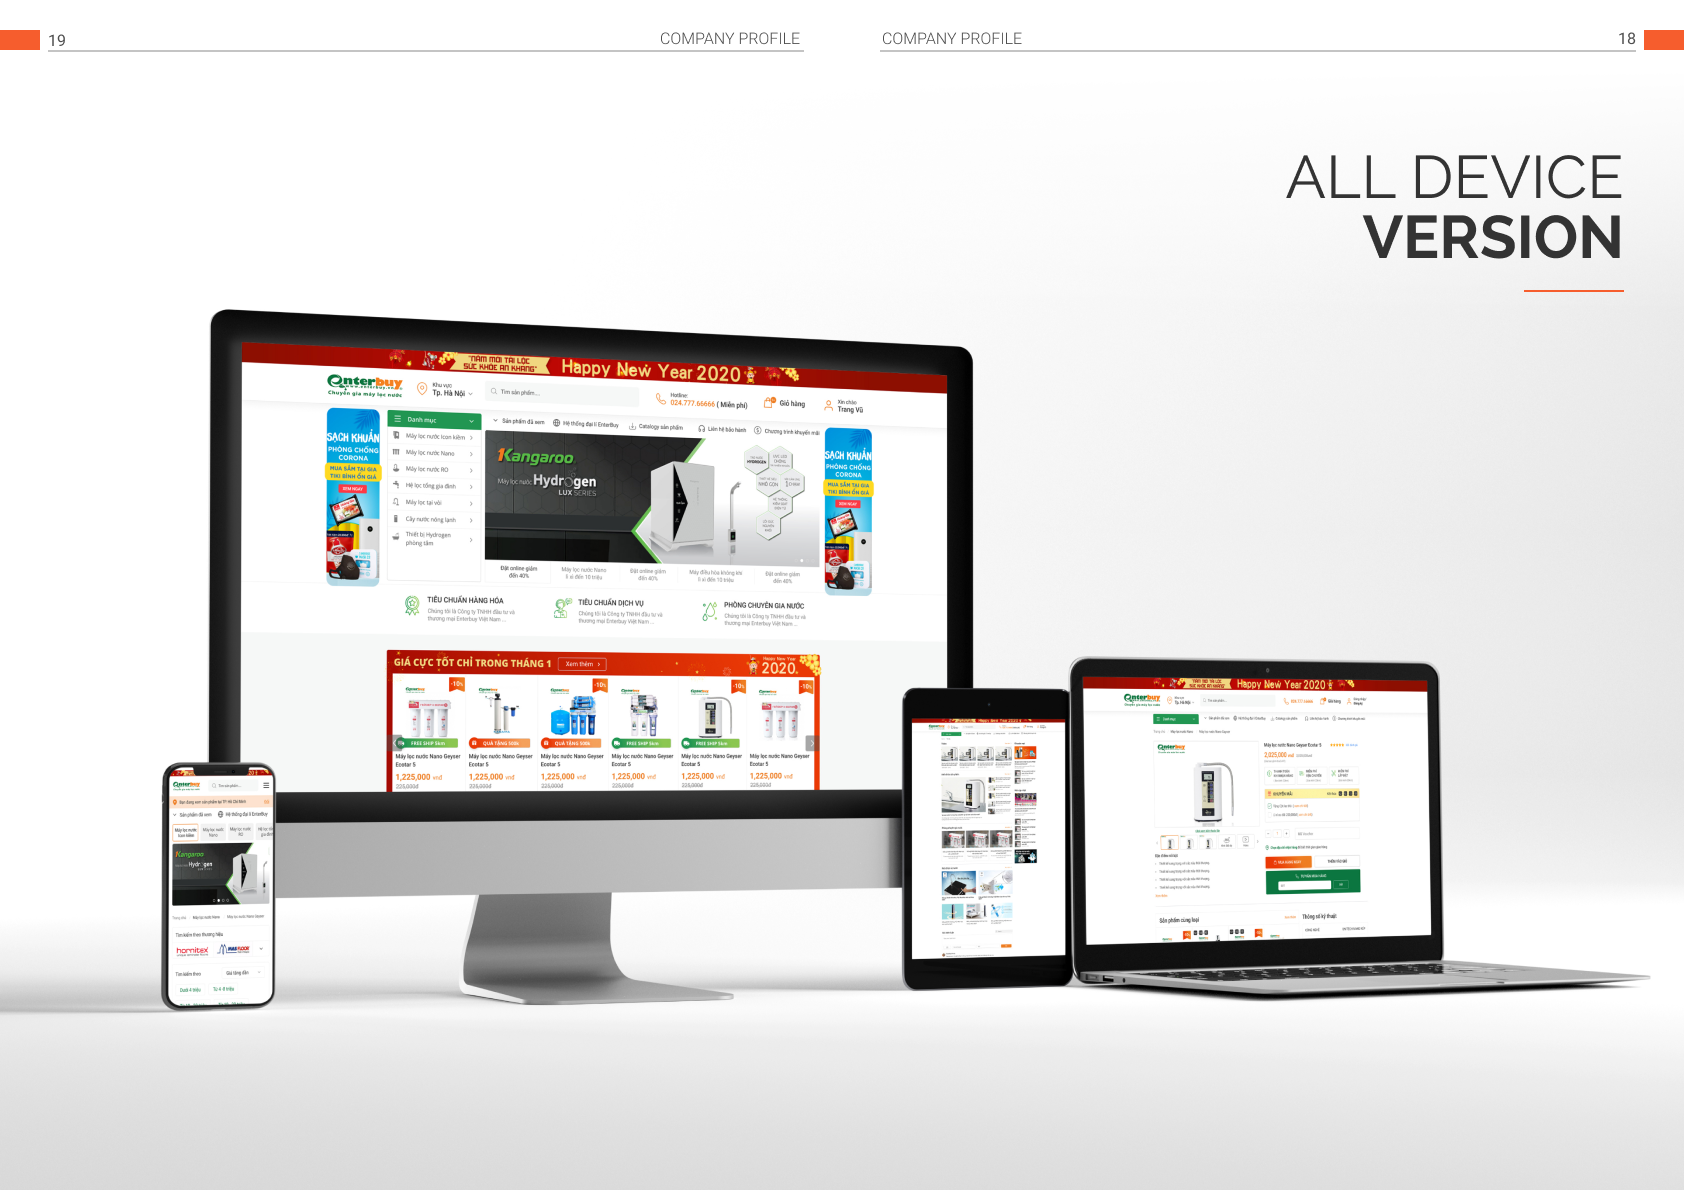 EnterBuy nâng cấp giao diện và tính năng cho Website hỗ trợ khách hàng tìm kiếm và đặt hàng tốt hơn